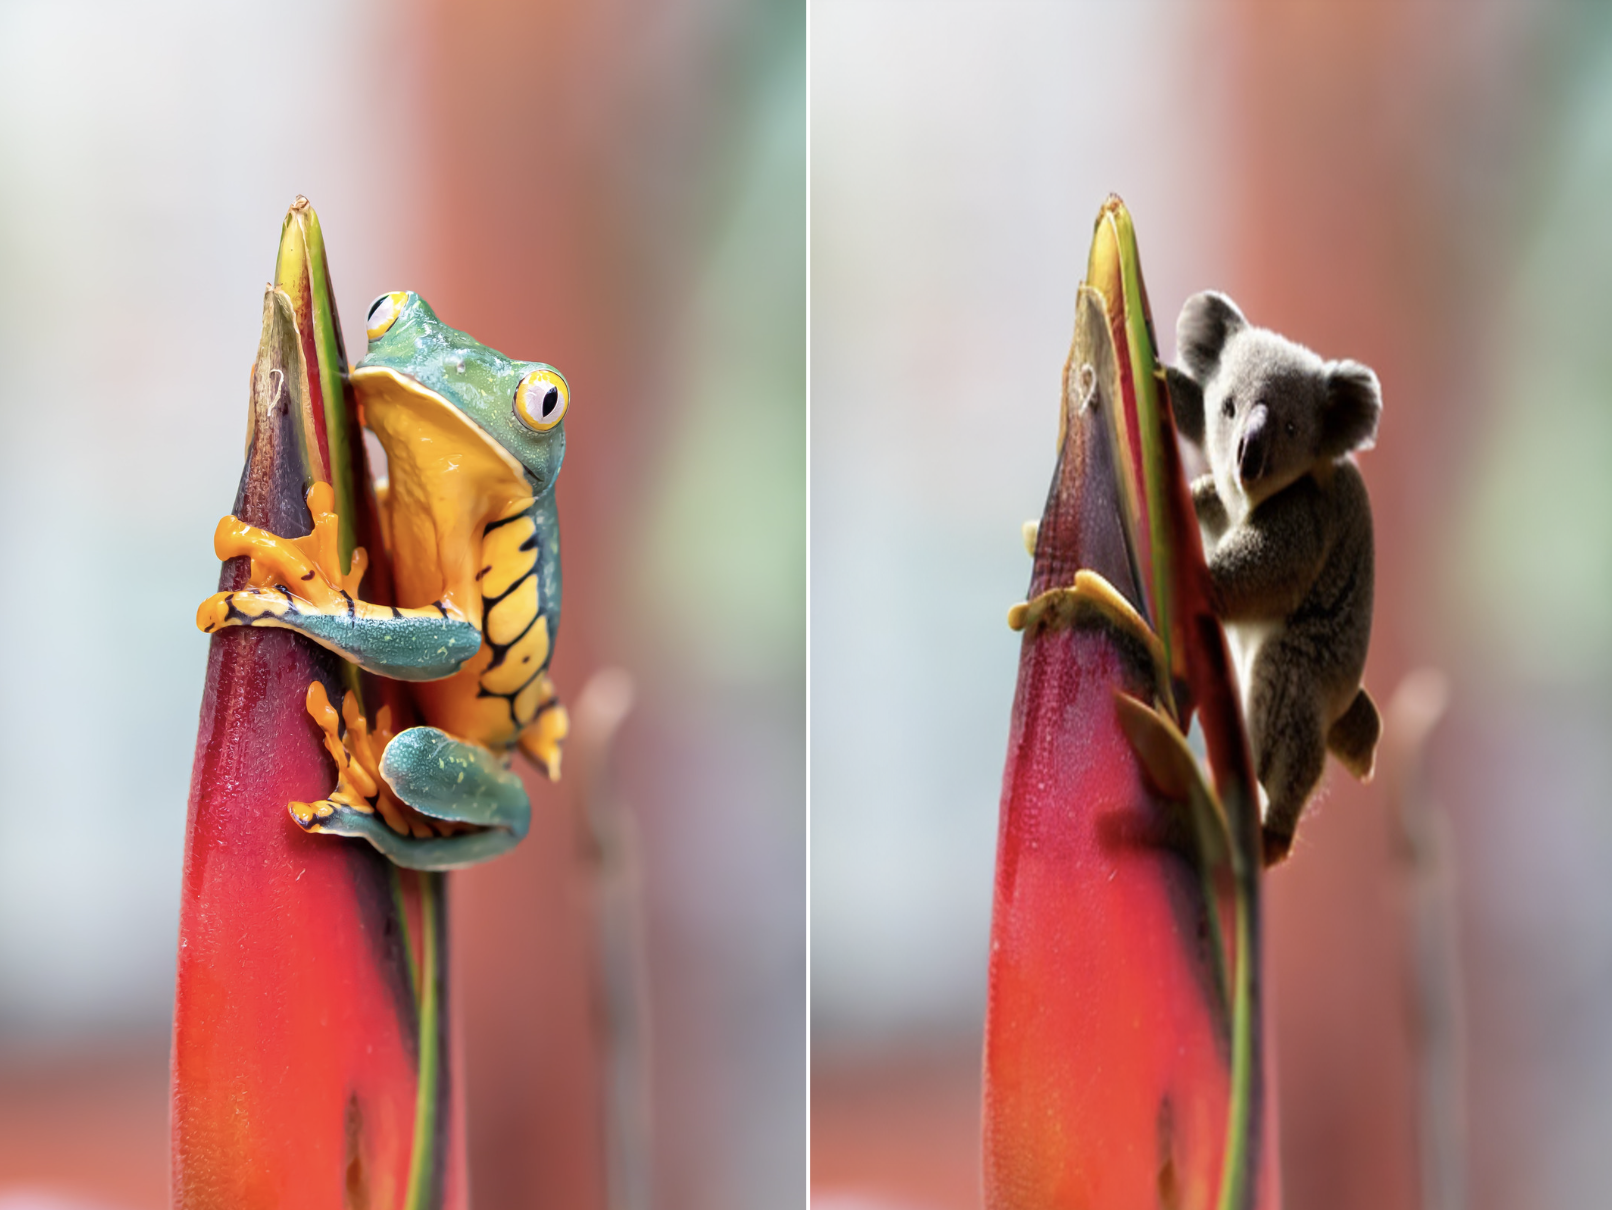 两个并排的图像。左图是一只青蛙紧贴着一朵热带色花朵的原始图像，背景明亮而模糊。右边的图片是一样的，只是青蛙被AI生成的考拉熊取代了。用SAM + Stable Diffusion制作的图像。